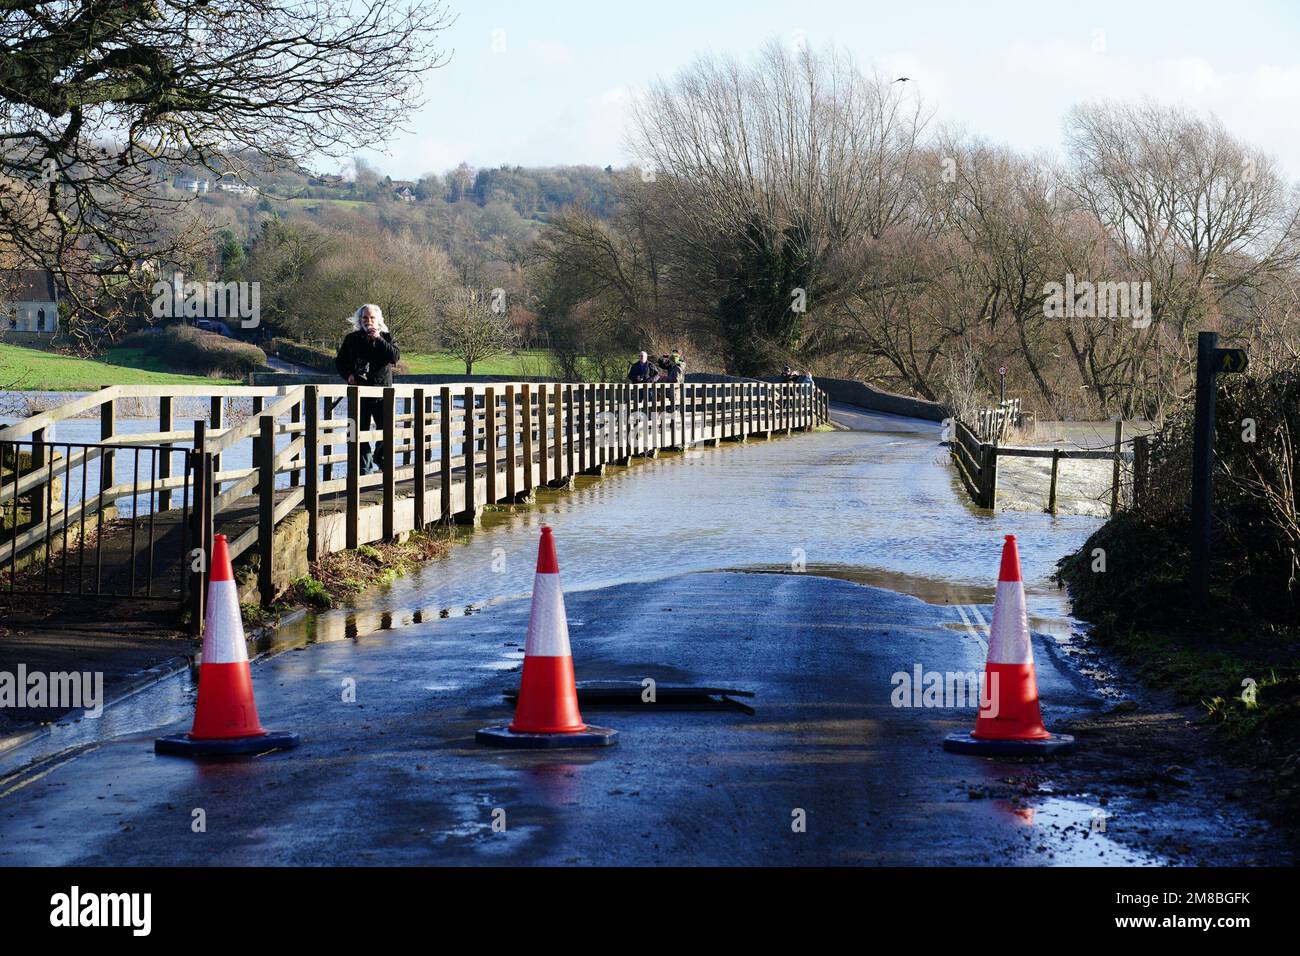 Los conos de tráfico bloquean un puente inundado por el río Avon, en Lacock, Wiltshire. Fecha de la fotografía: Viernes 13 de enero de 2023. Foto de stock